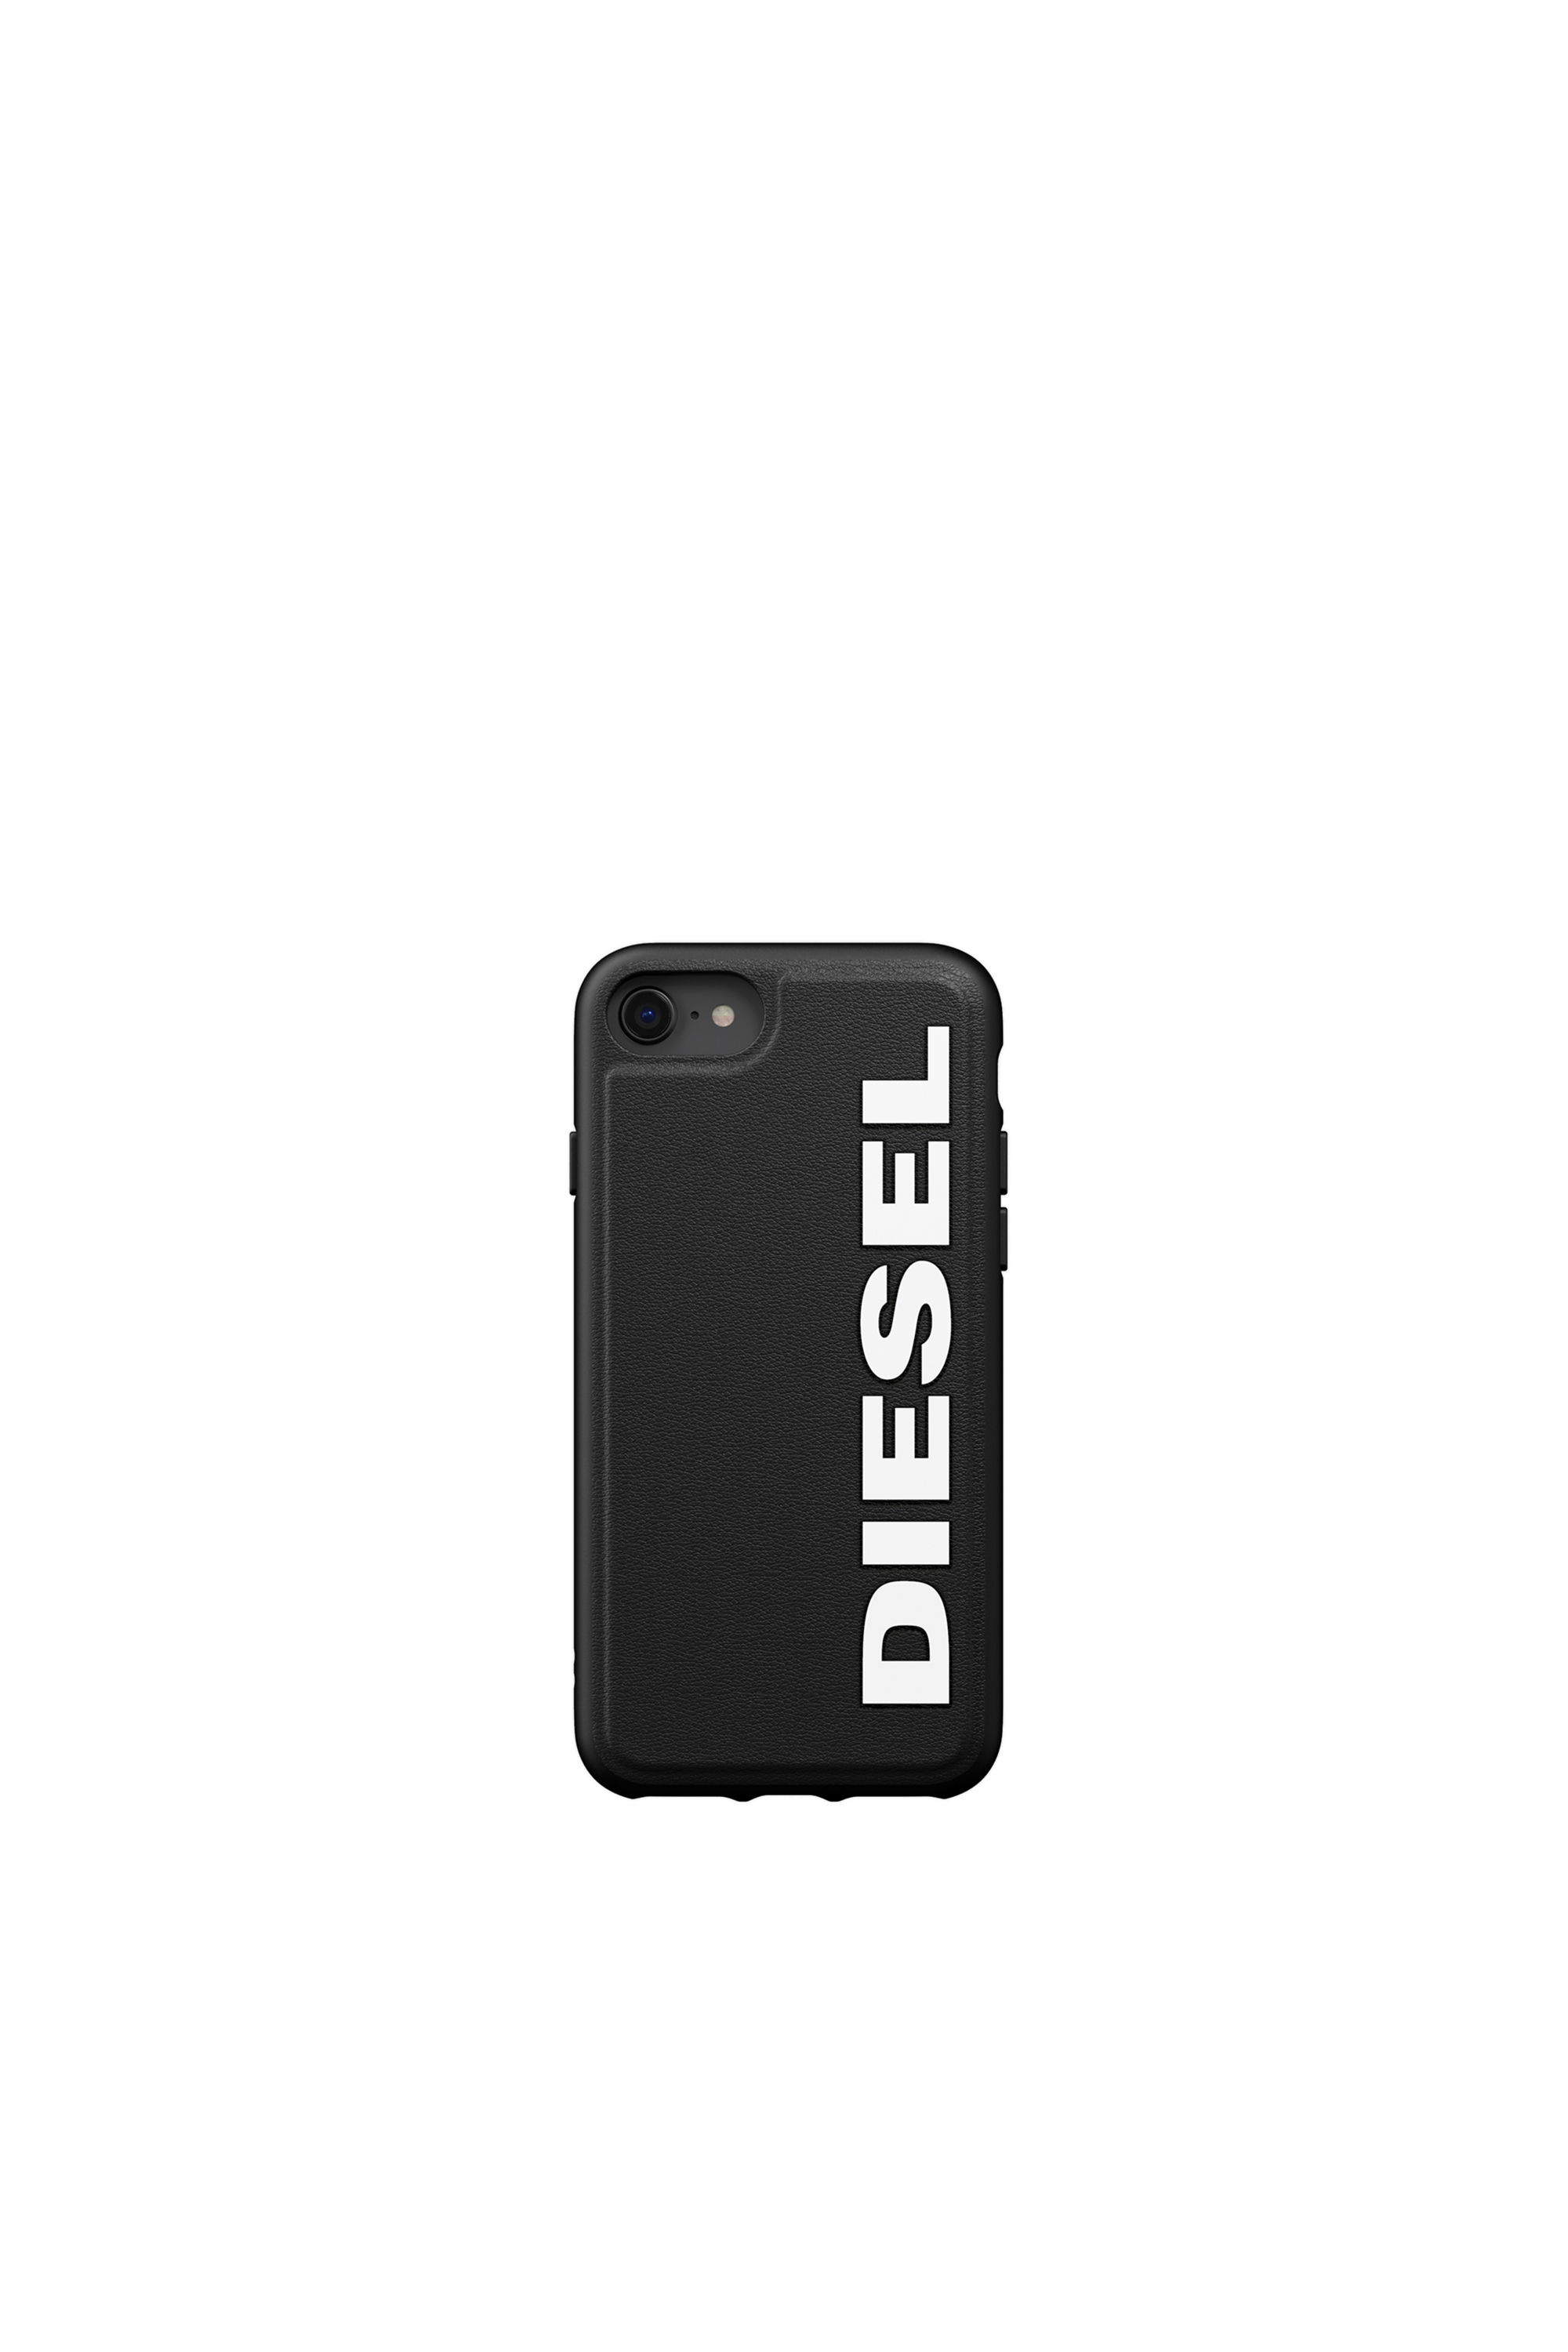 Diesel - 41976 STANDARD CASES, Black - Image 2